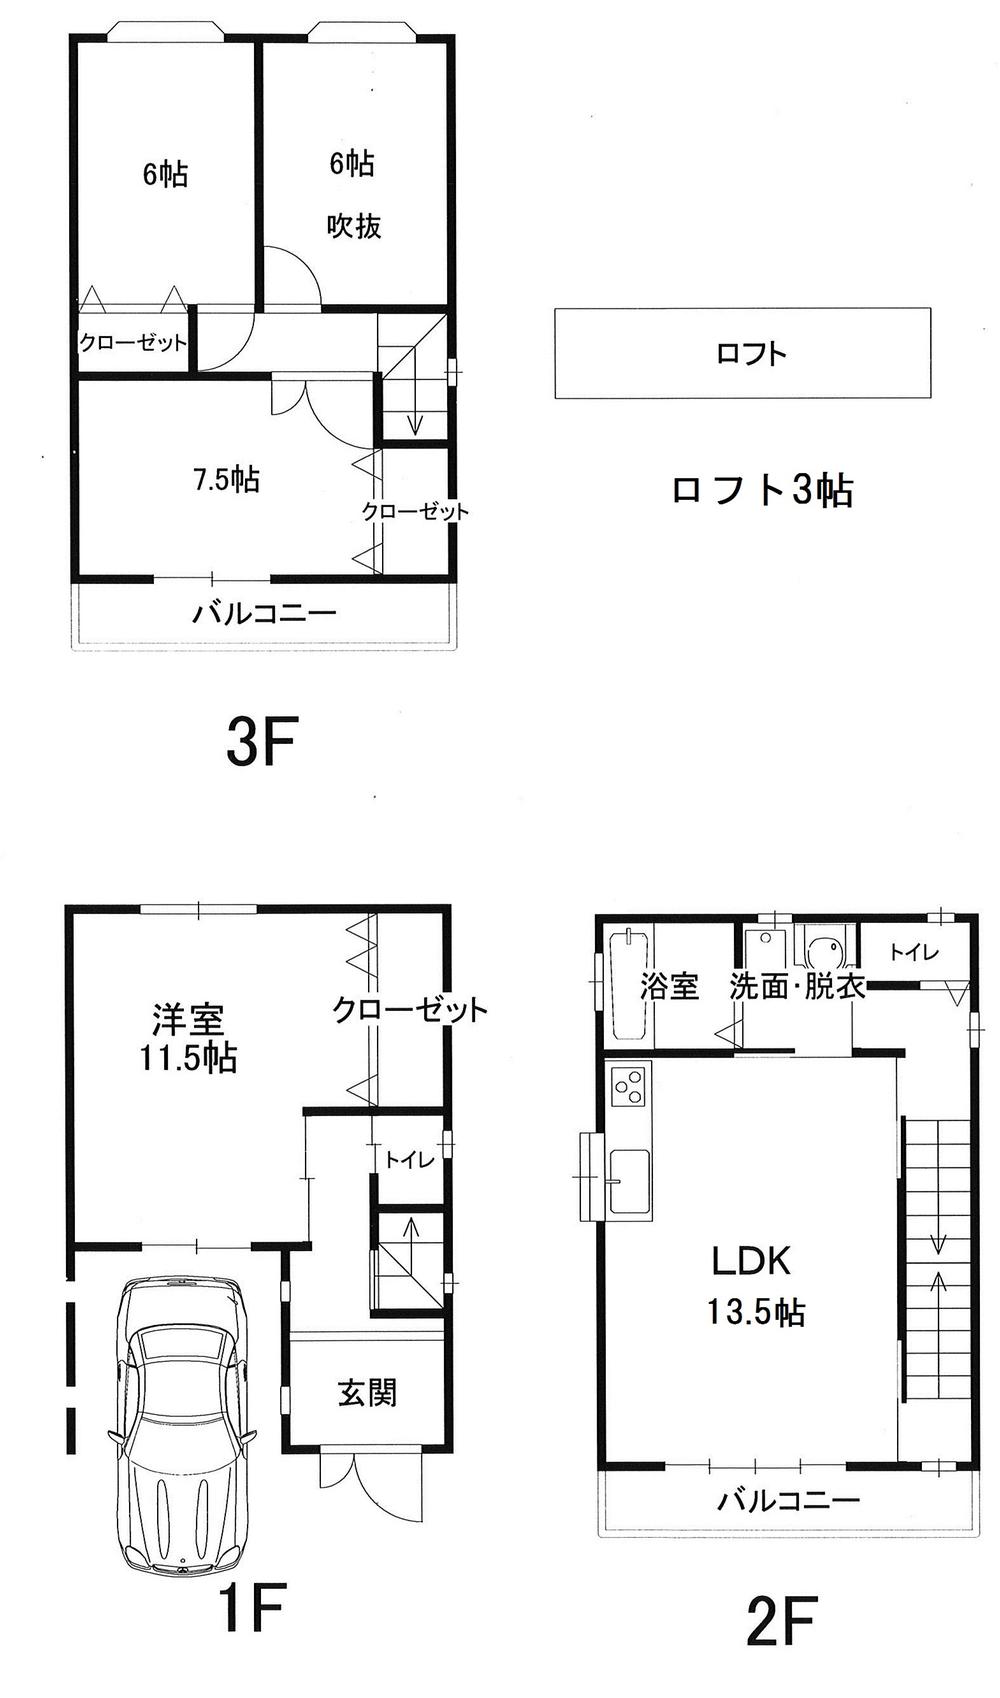 Floor plan. 22,800,000 yen, 4LDK, Land area 61.62 sq m , Building area 110.16 sq m floor plan